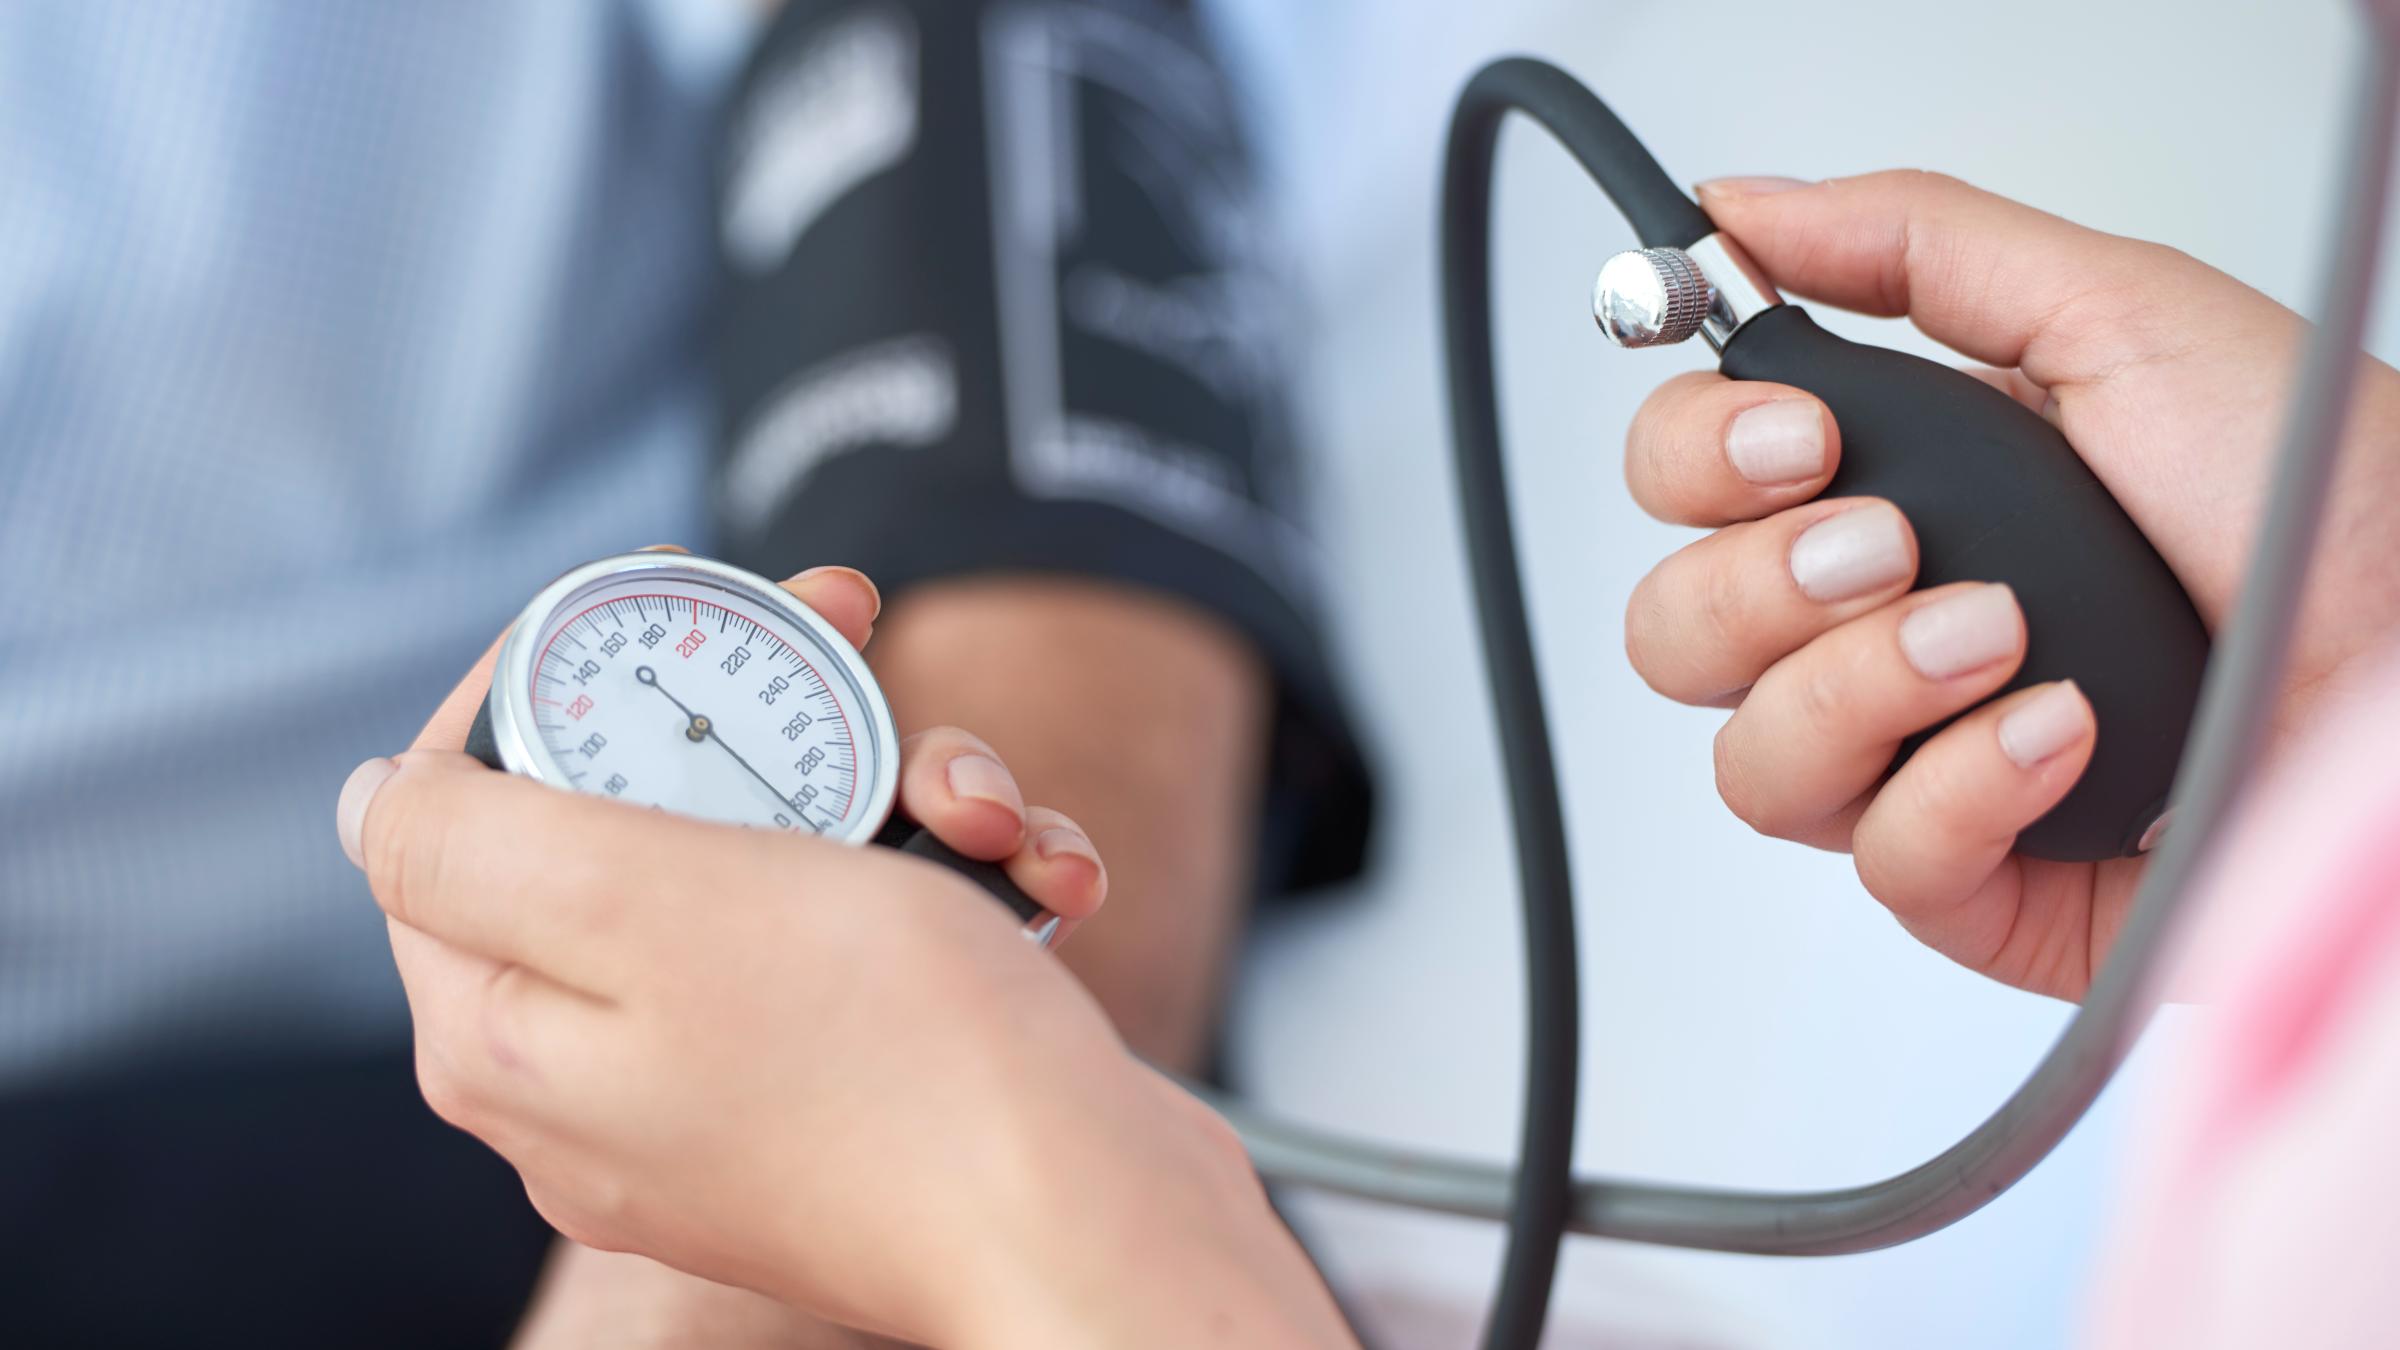 Nurse measuring a patient's blood pressure